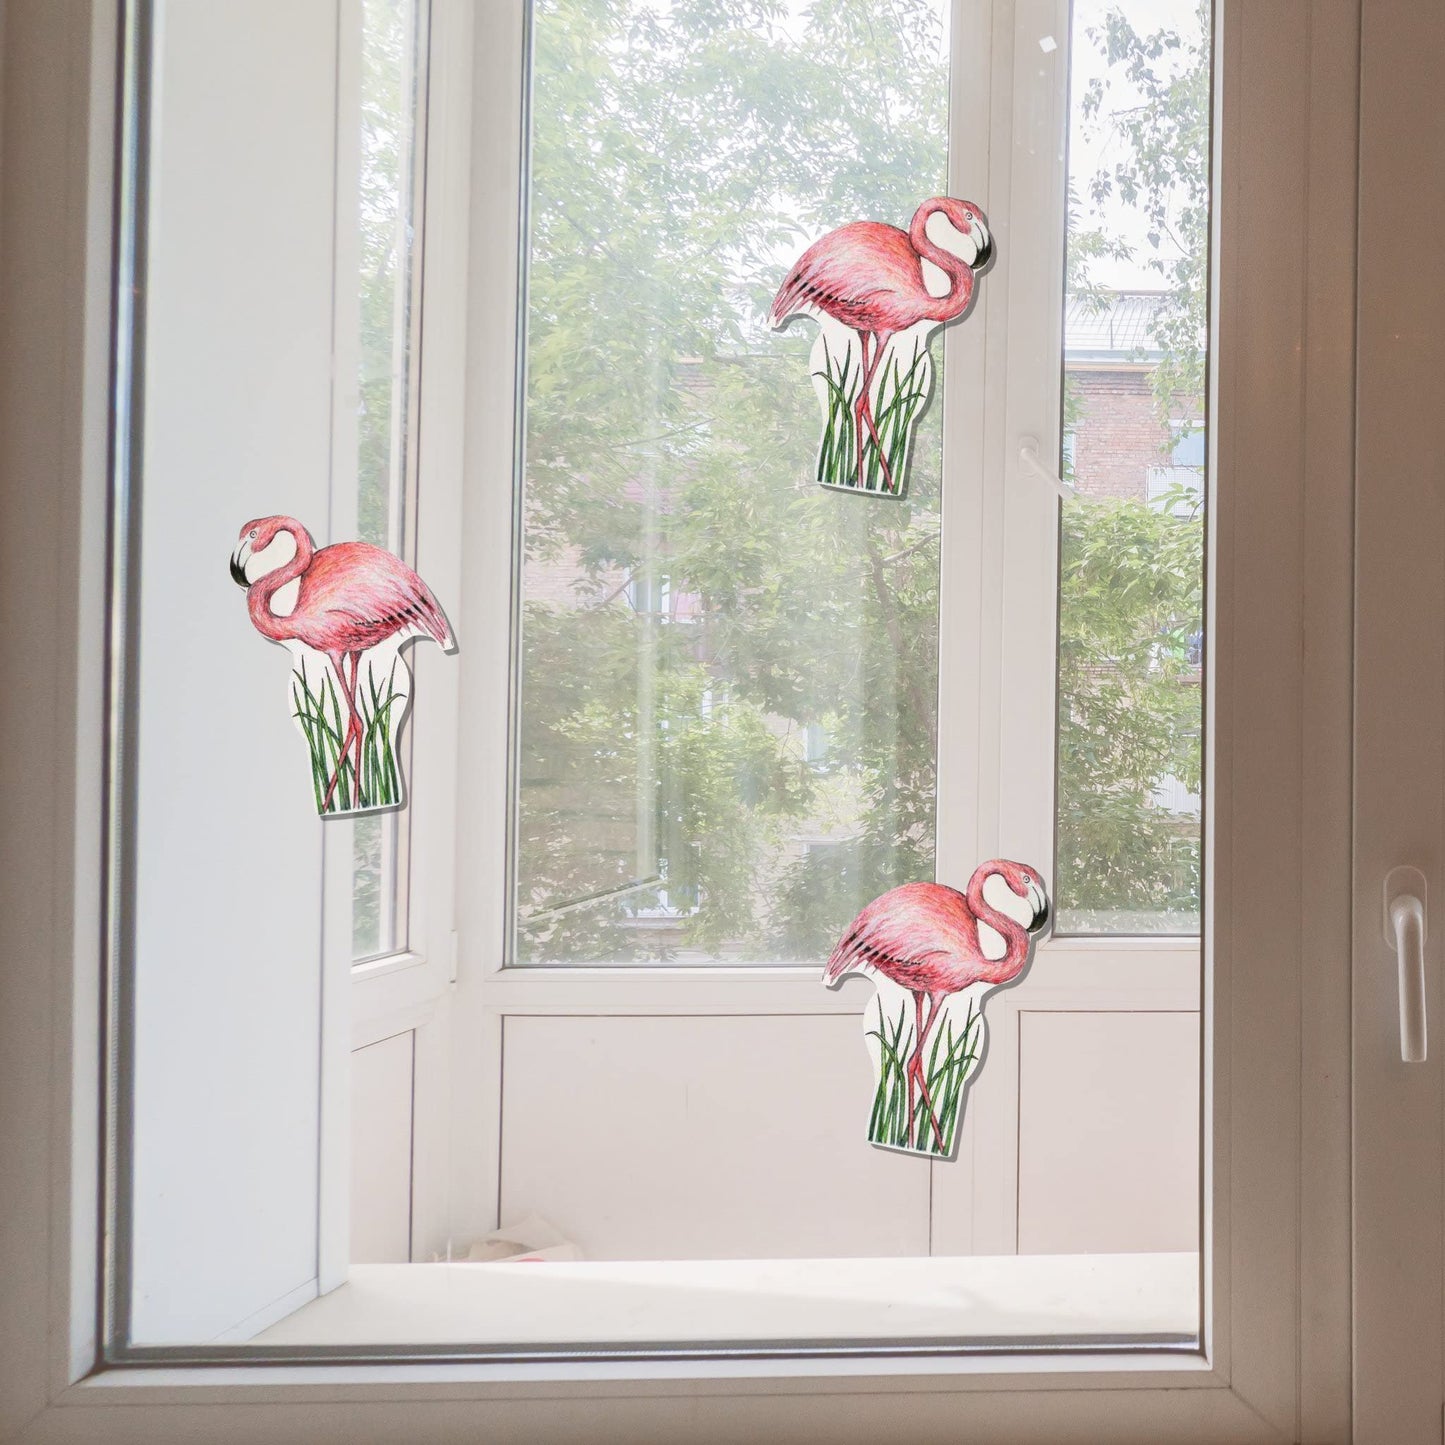 Flamingo (4.25" x 6.25")